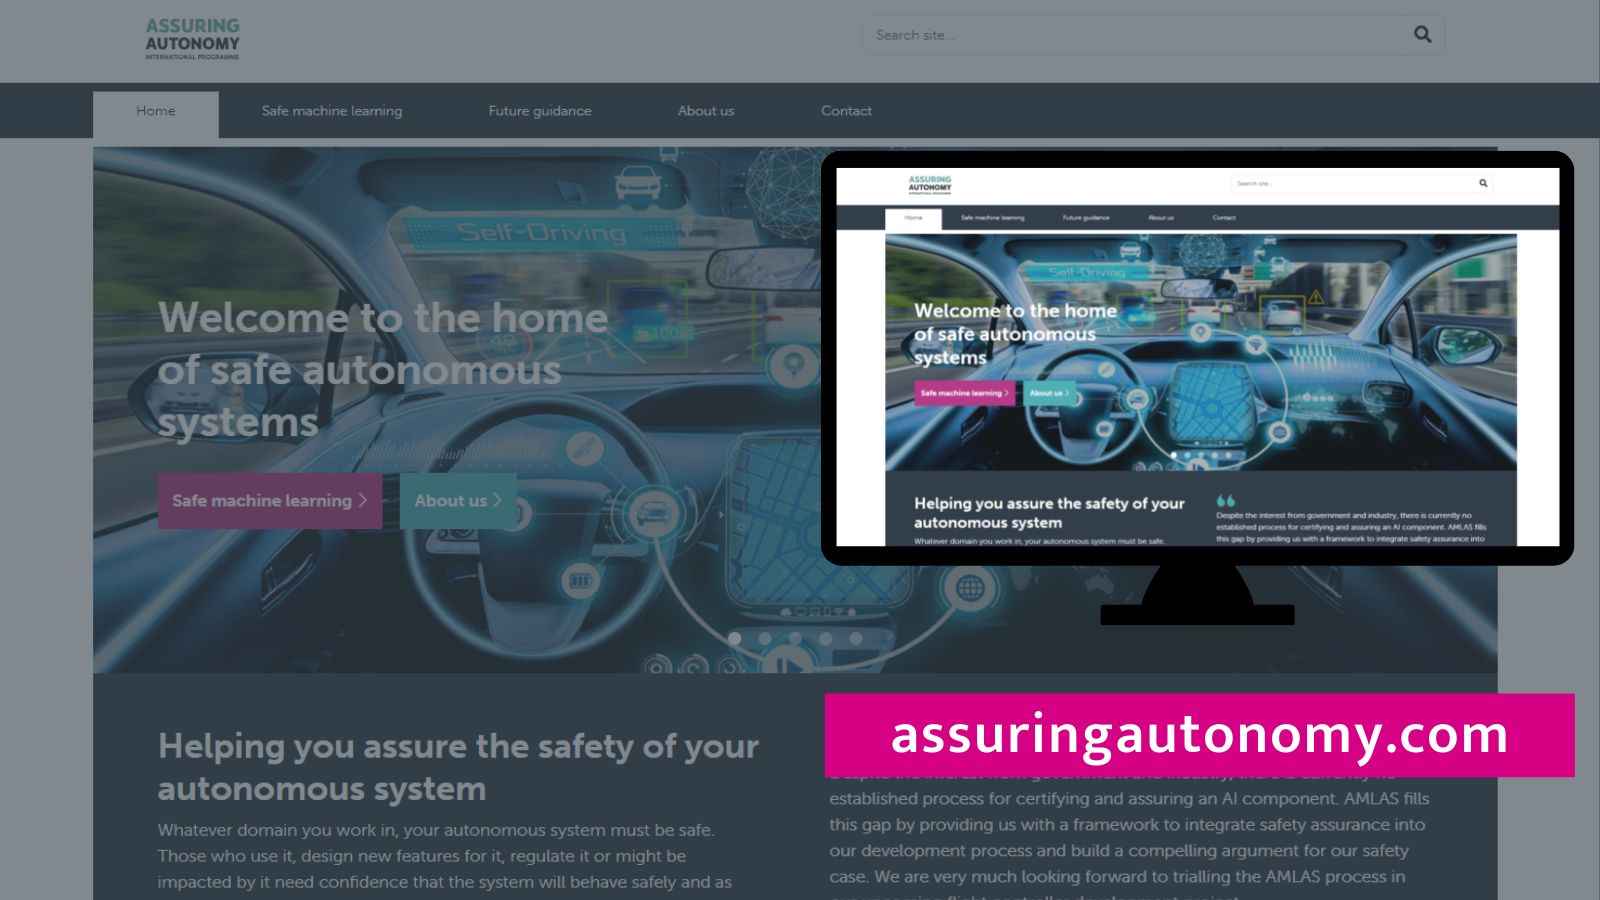 Image of guidance website - www.assuringautonomy.com